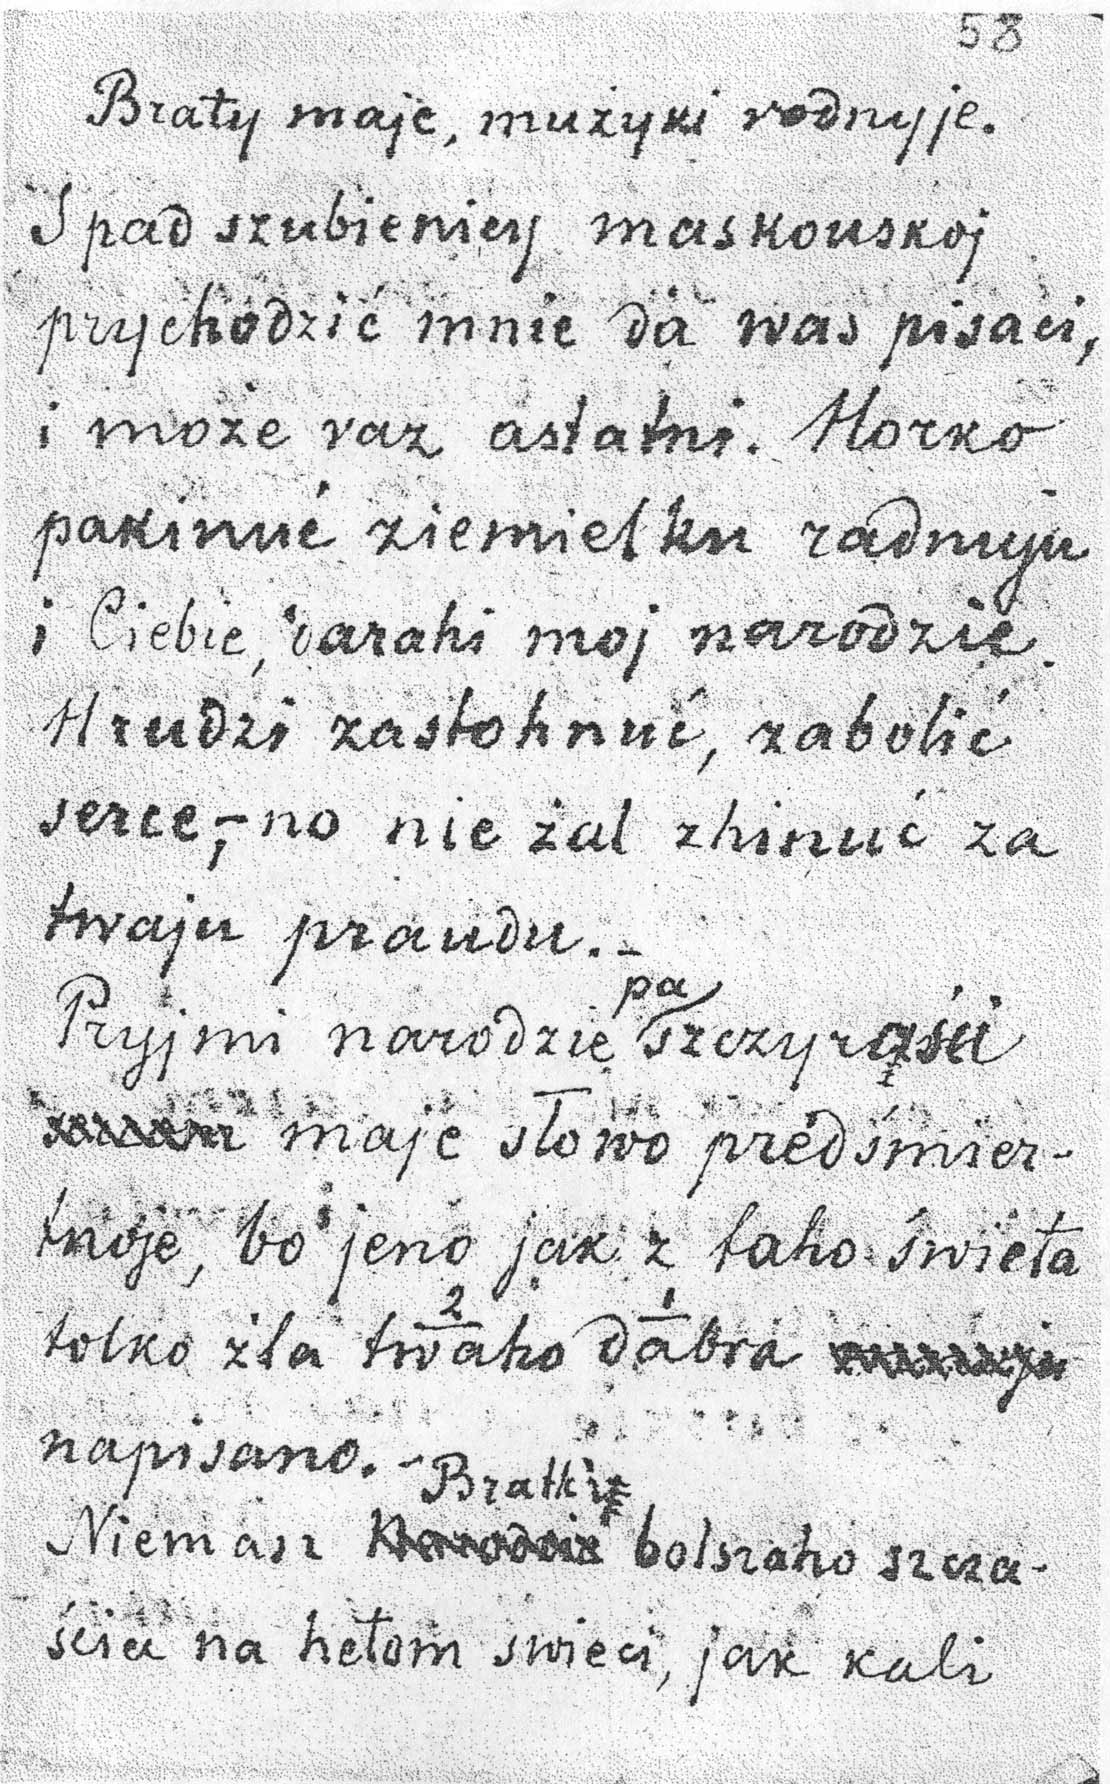 Fragment jednego z „Piśm z pad szubienicy”, pisanych ręką Kastusia Kalinowskiego. Słowa „Horko pakinuć ziamielku radnuju, darahi moj narodzie” mówią same za siebie. Obcy tak do swoich by nie pisał